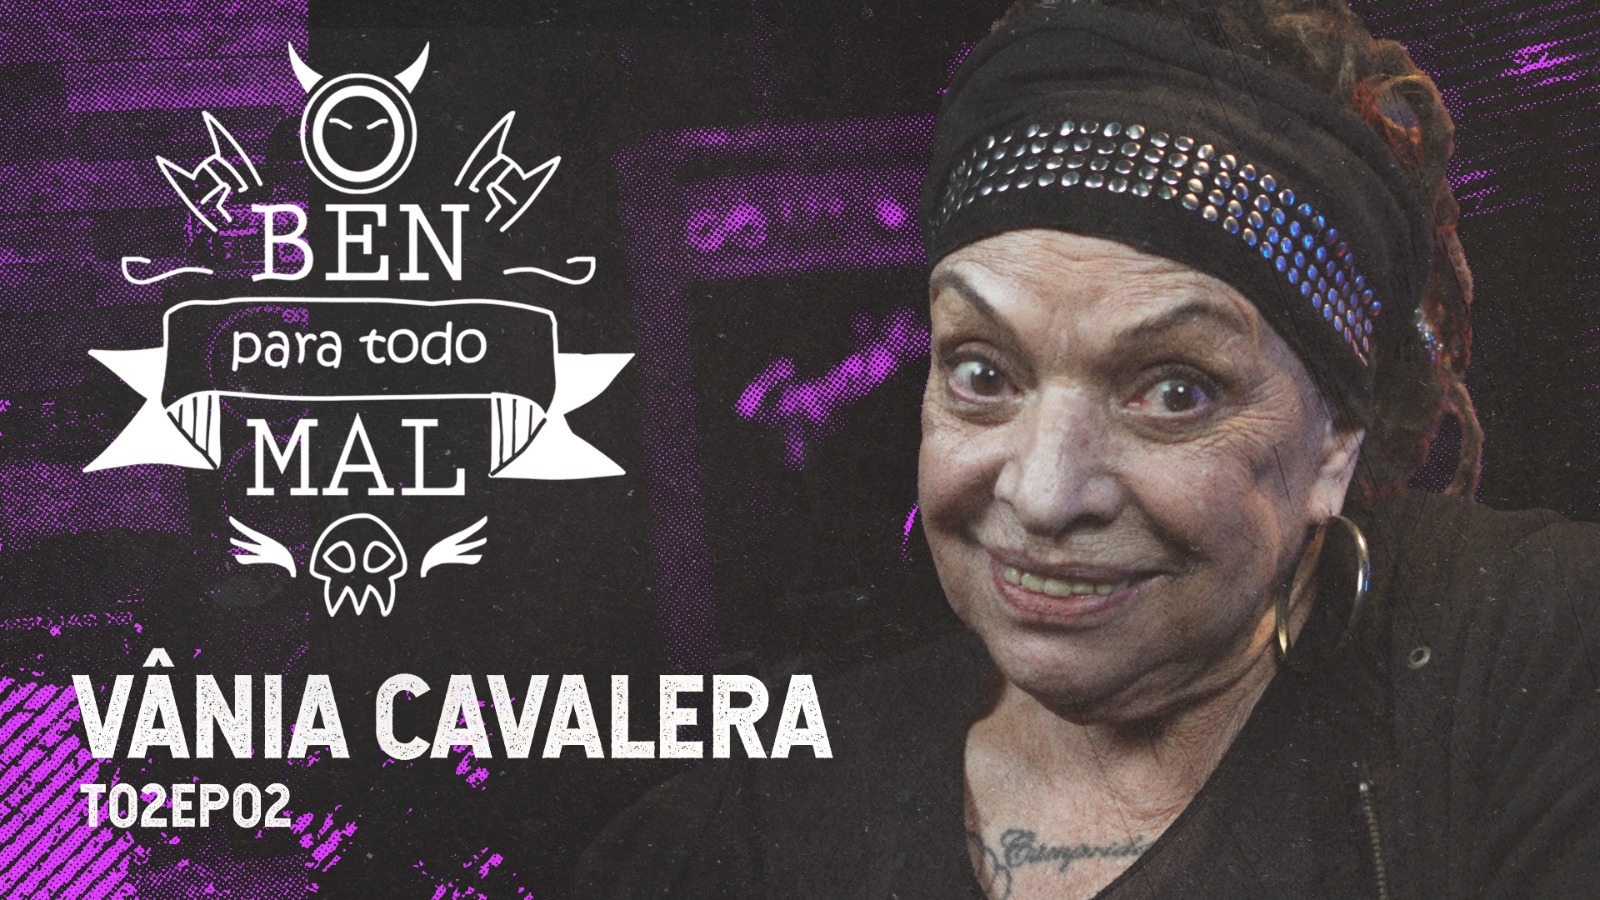 Vania Cavalera (mãe de Max e Iggor, fundadores do Sepultura) é a estrela de novo episódio da série “O Ben para todo mal”, nesta quarta-feira (1/5), no Music Box Brazil